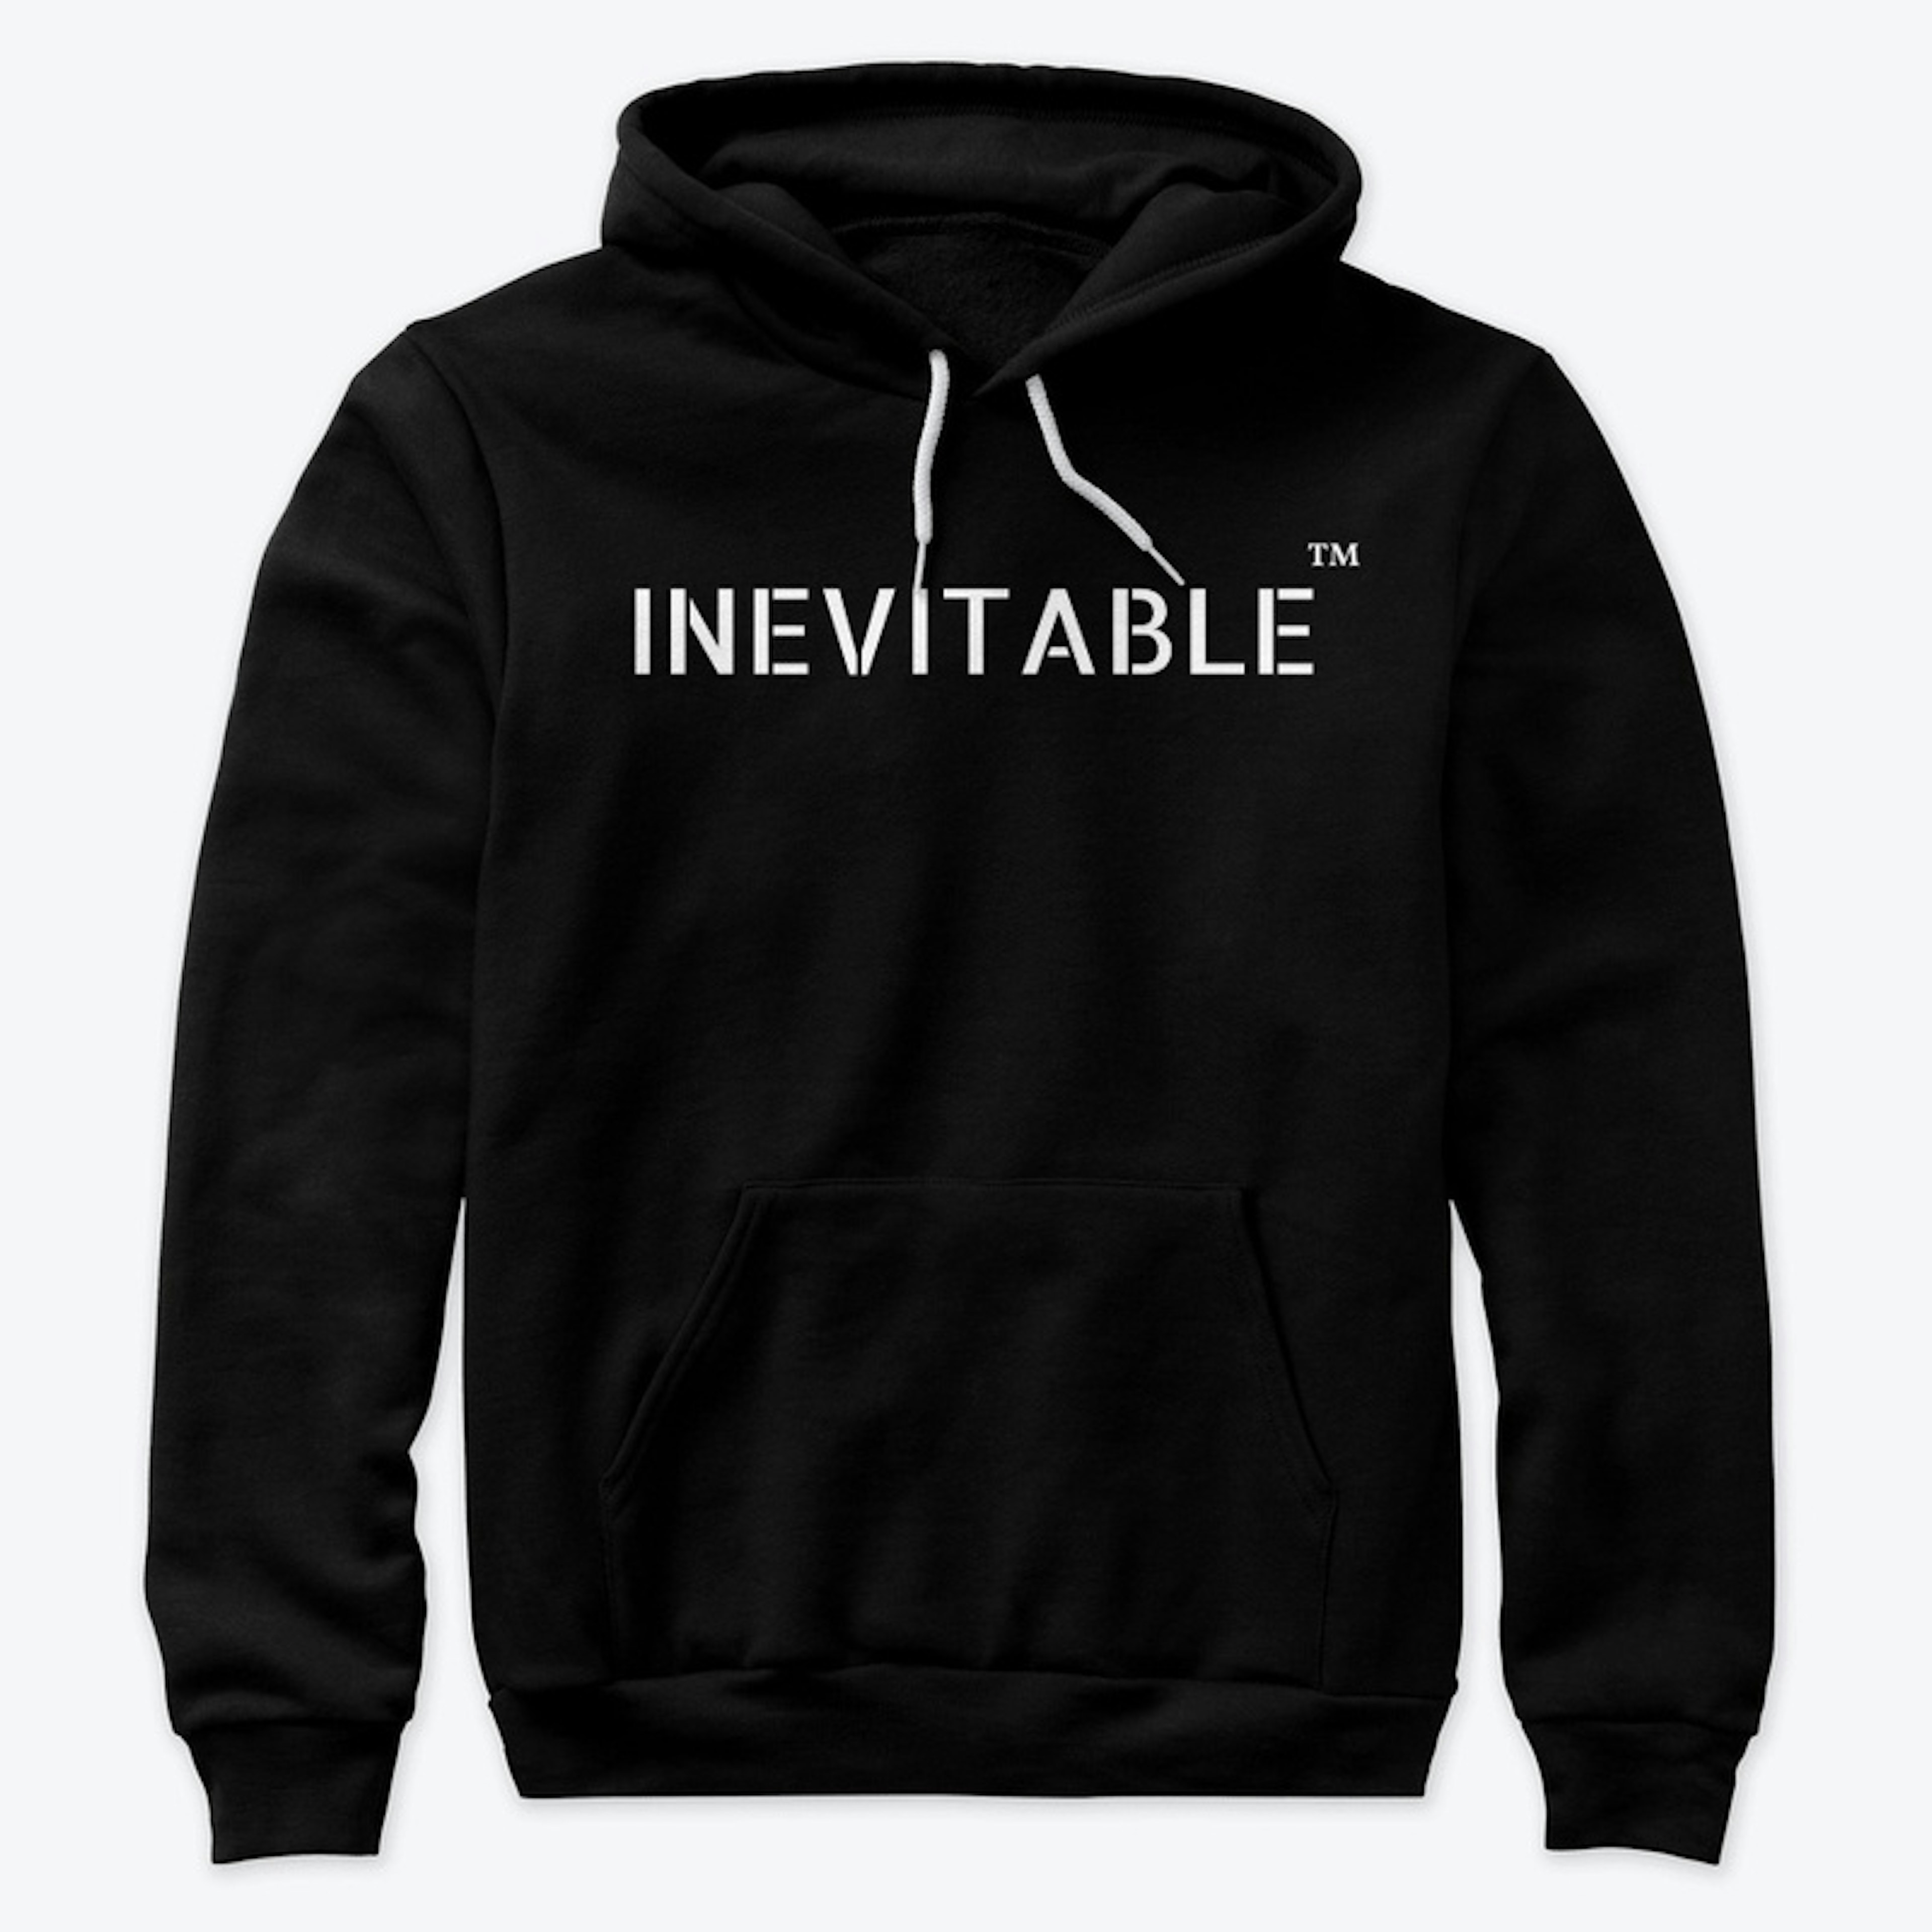 Inevitable hoodie